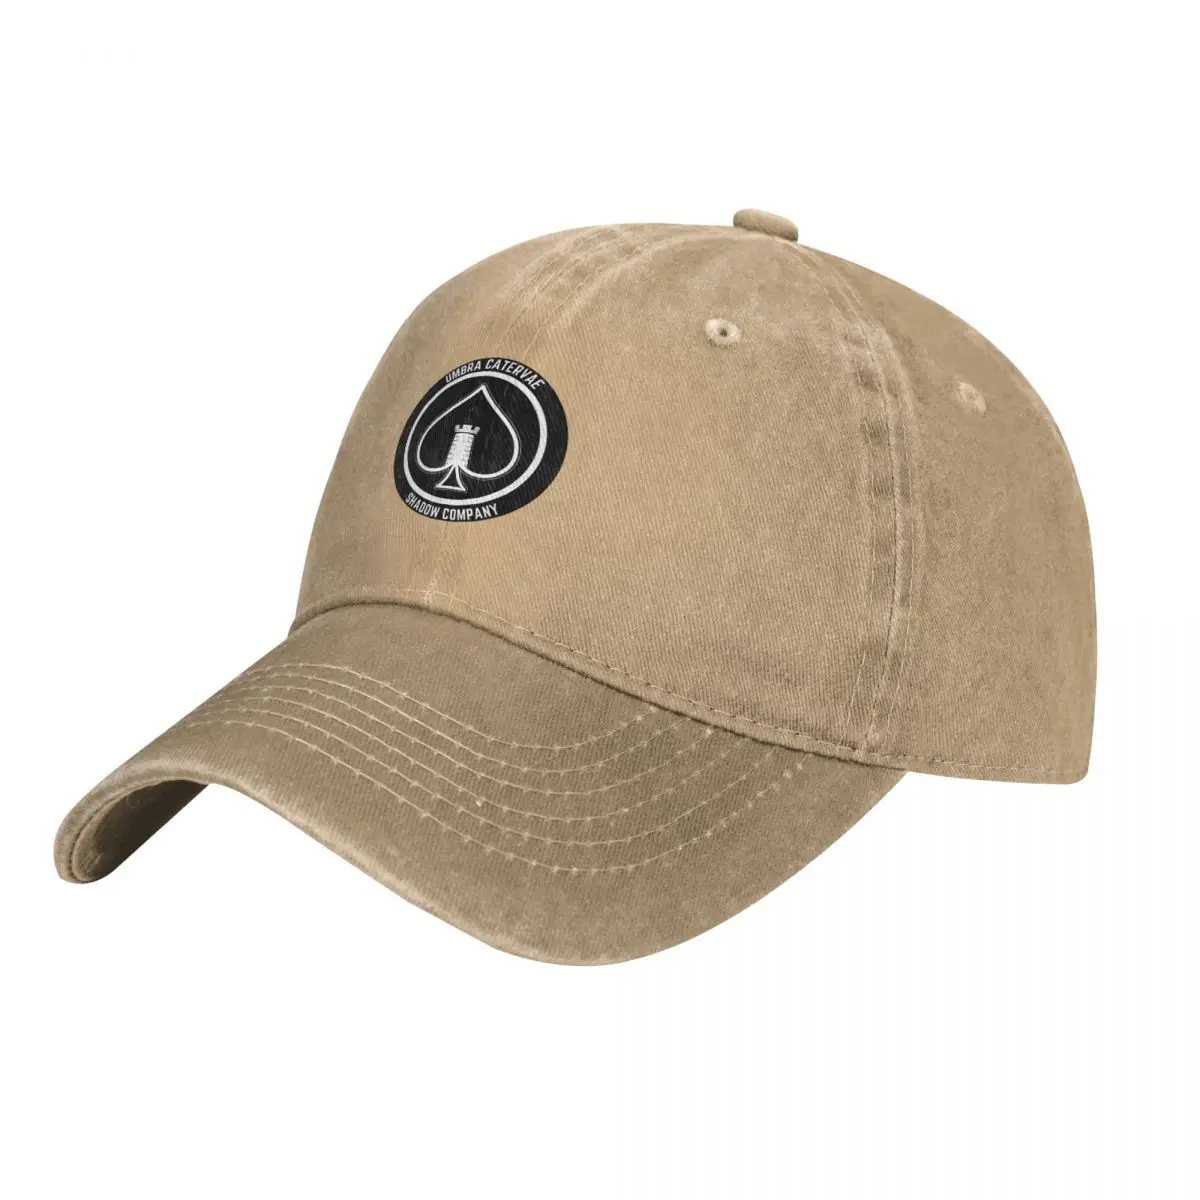 Shadow Company Emblem Cap Cowboy Hat bucket hat Sun cap military tactica... - £17.39 GBP